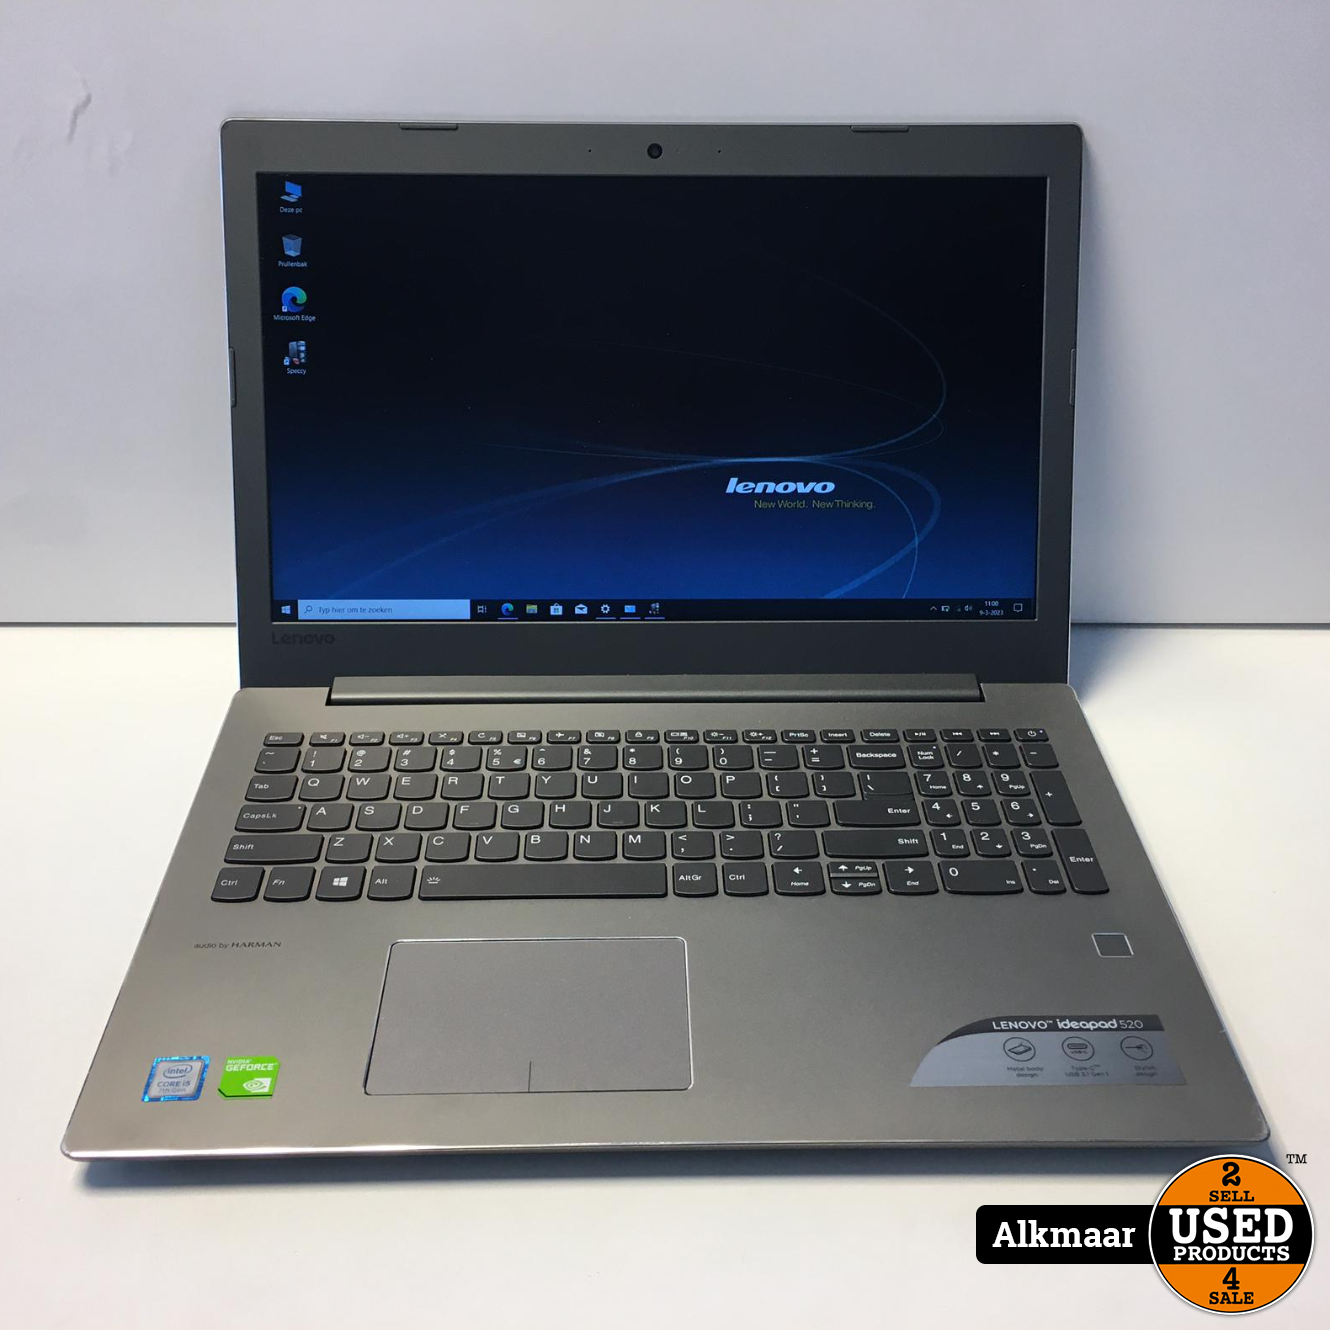 Lenovo iDeapad 520 15.6 inch laptop | i5 | Nette - Products Alkmaar